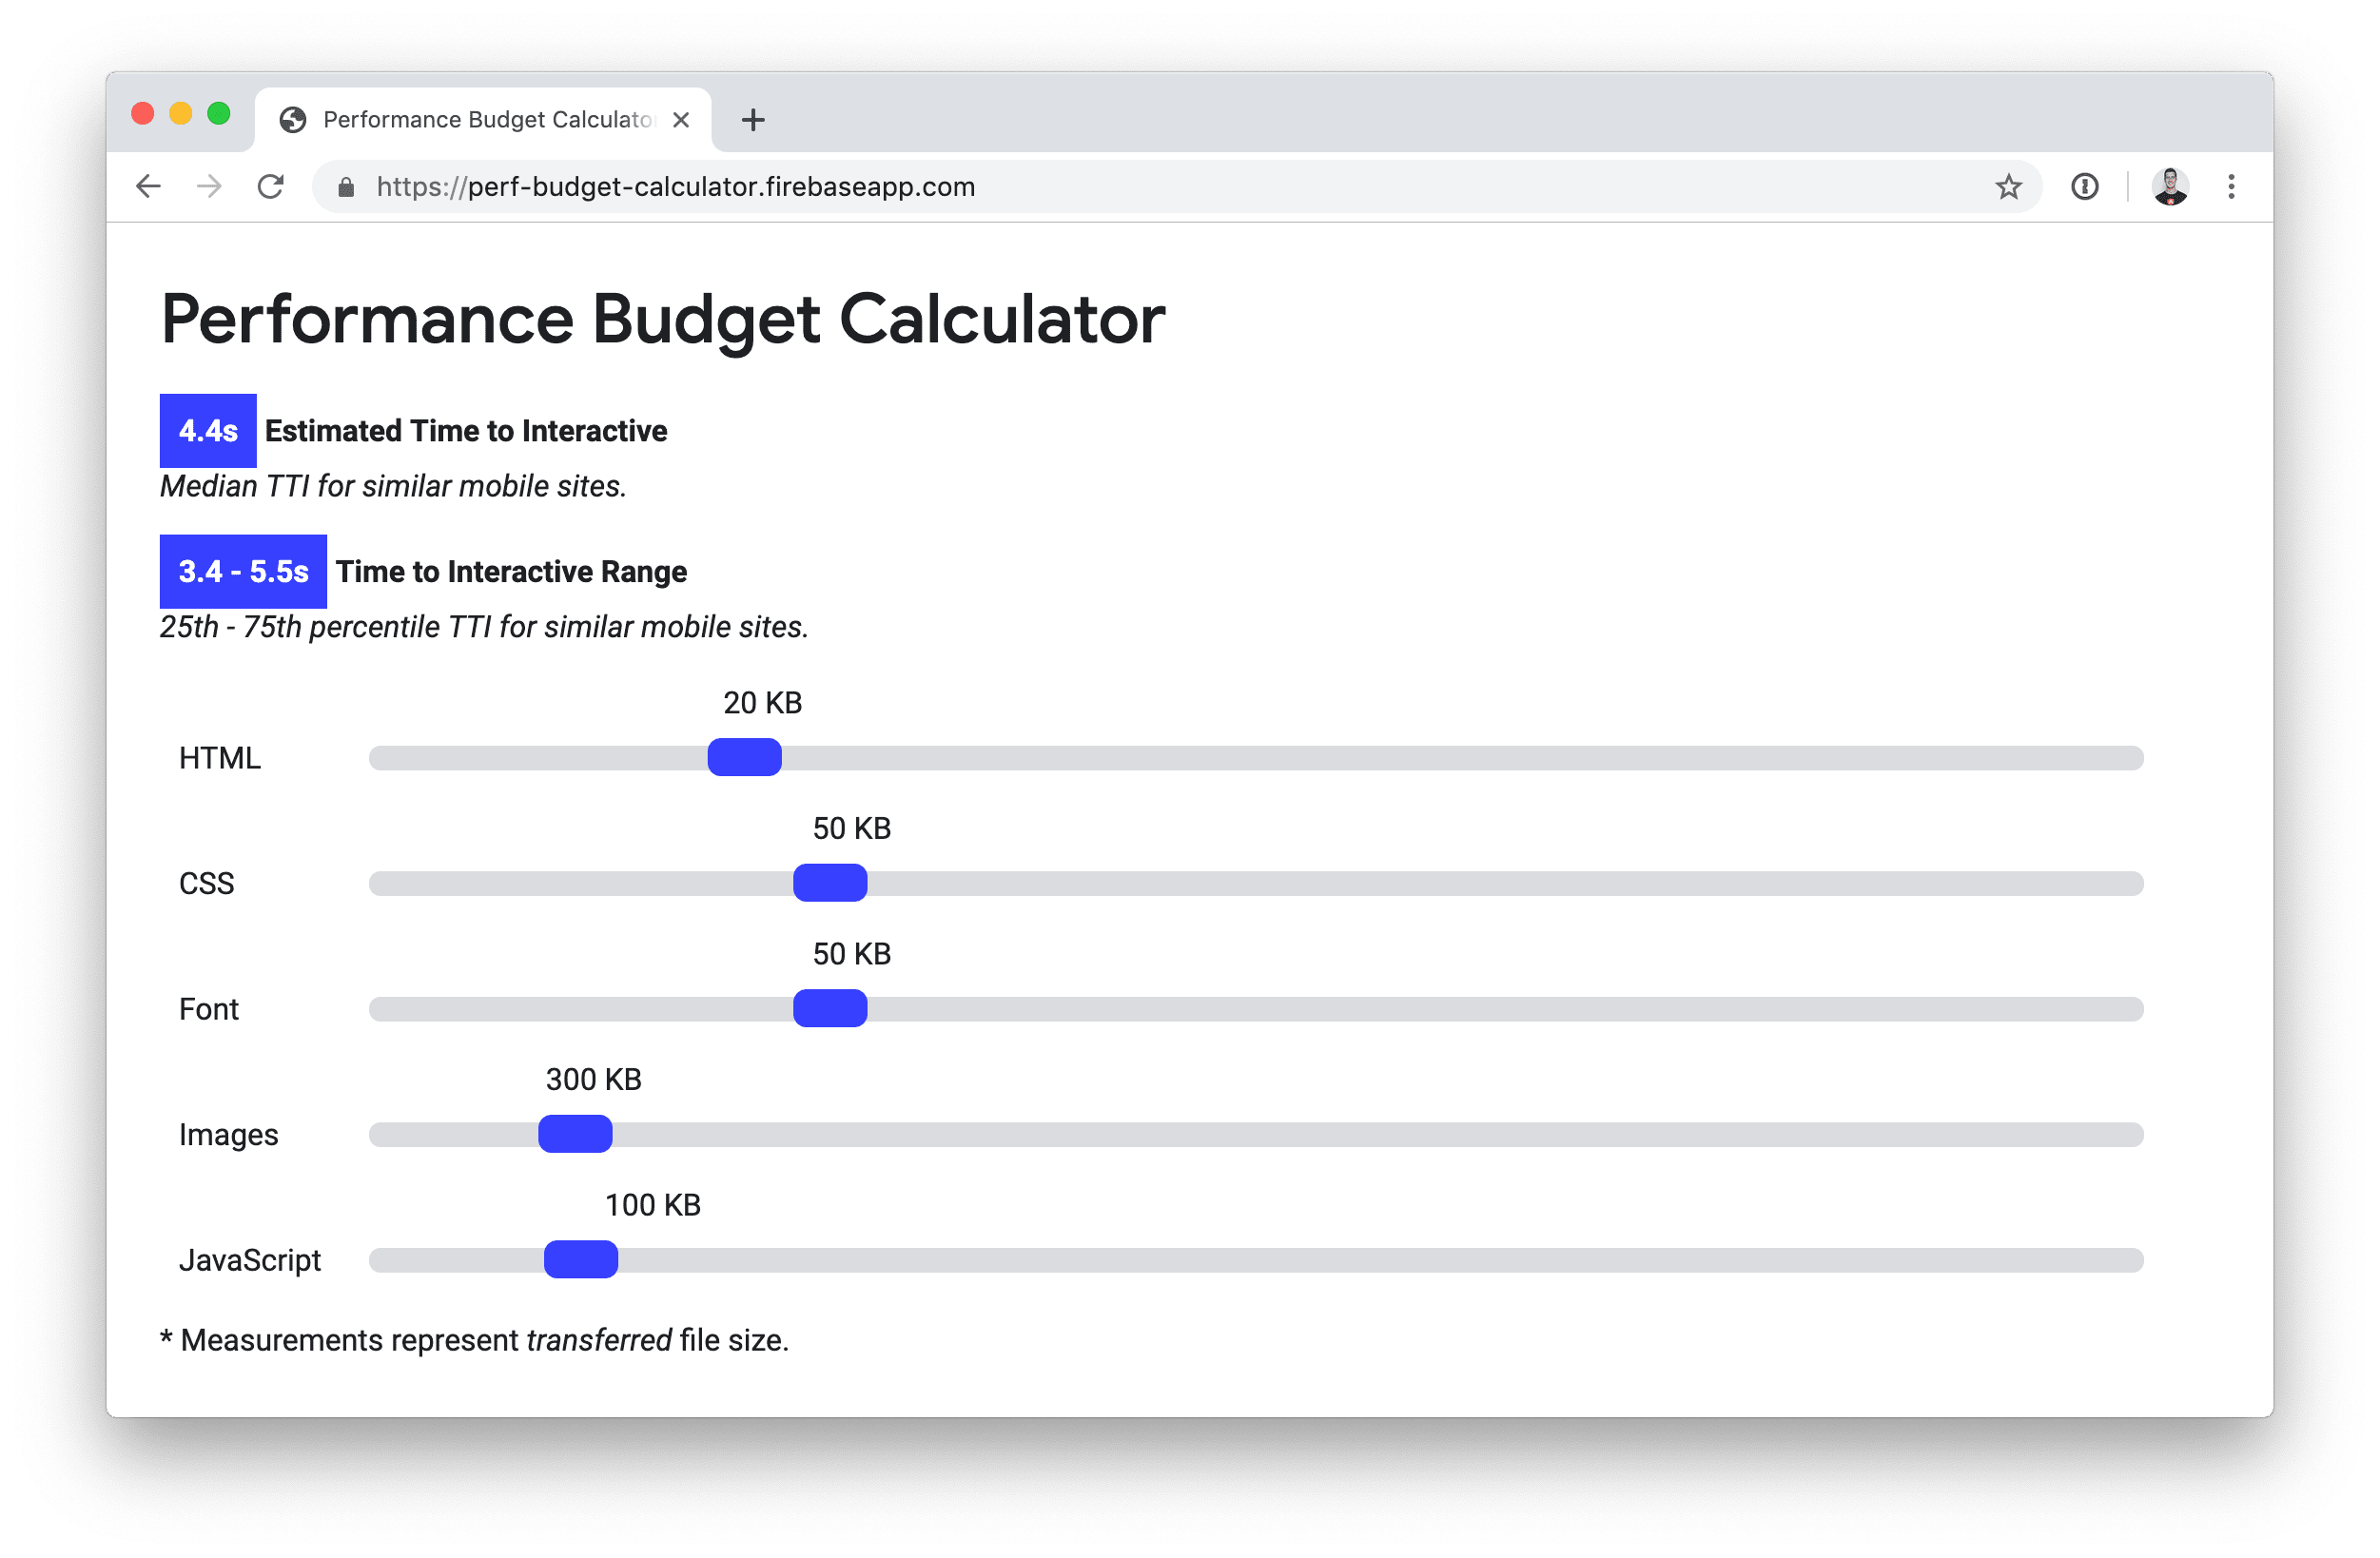 Calculadora de orçamento